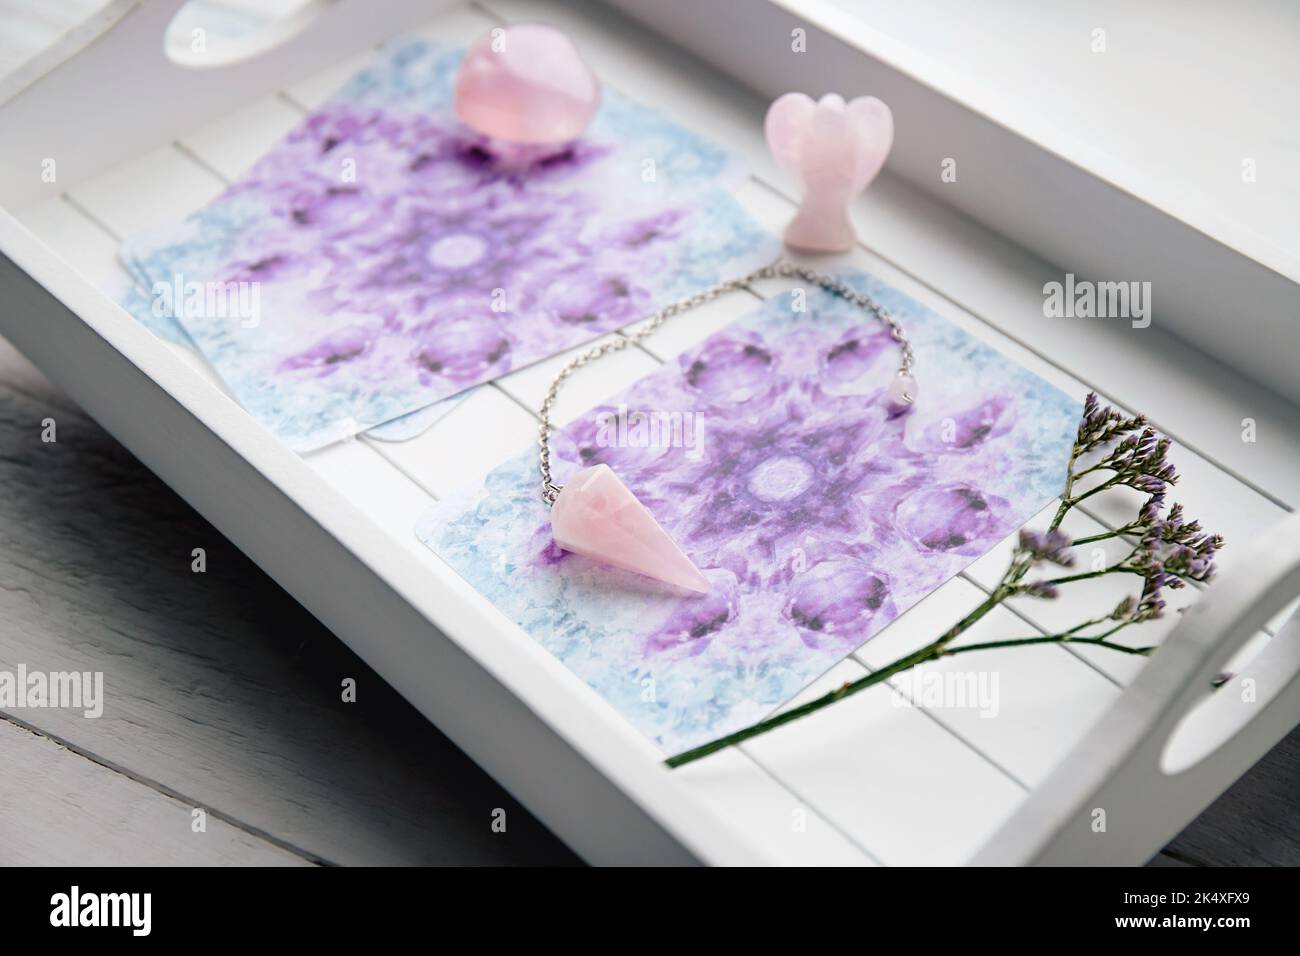 Terrasse avec cartes d'ange maison sur plateau blanc à la table de la maison, entouré de pierres semi-précieuses cristaux de quartz rose et figurine en forme d'ange. Banque D'Images